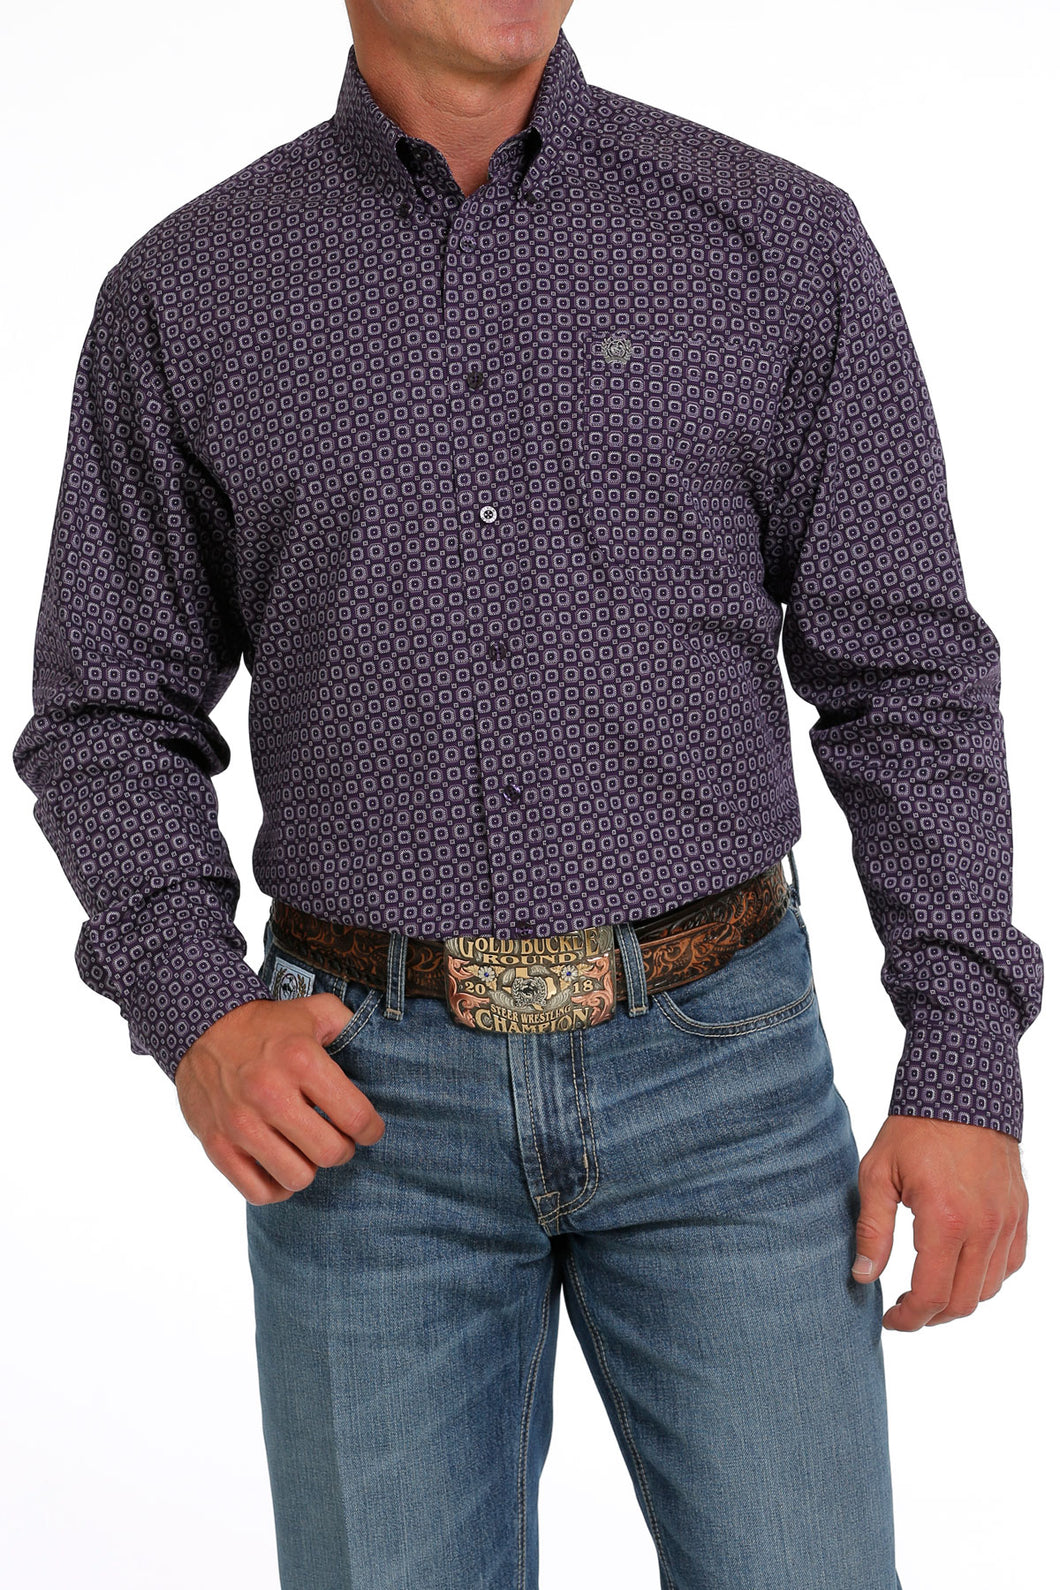 Cinch Purple Geometric Square Print Button-Down Shirt for Men – Pard\'s  Western Shop